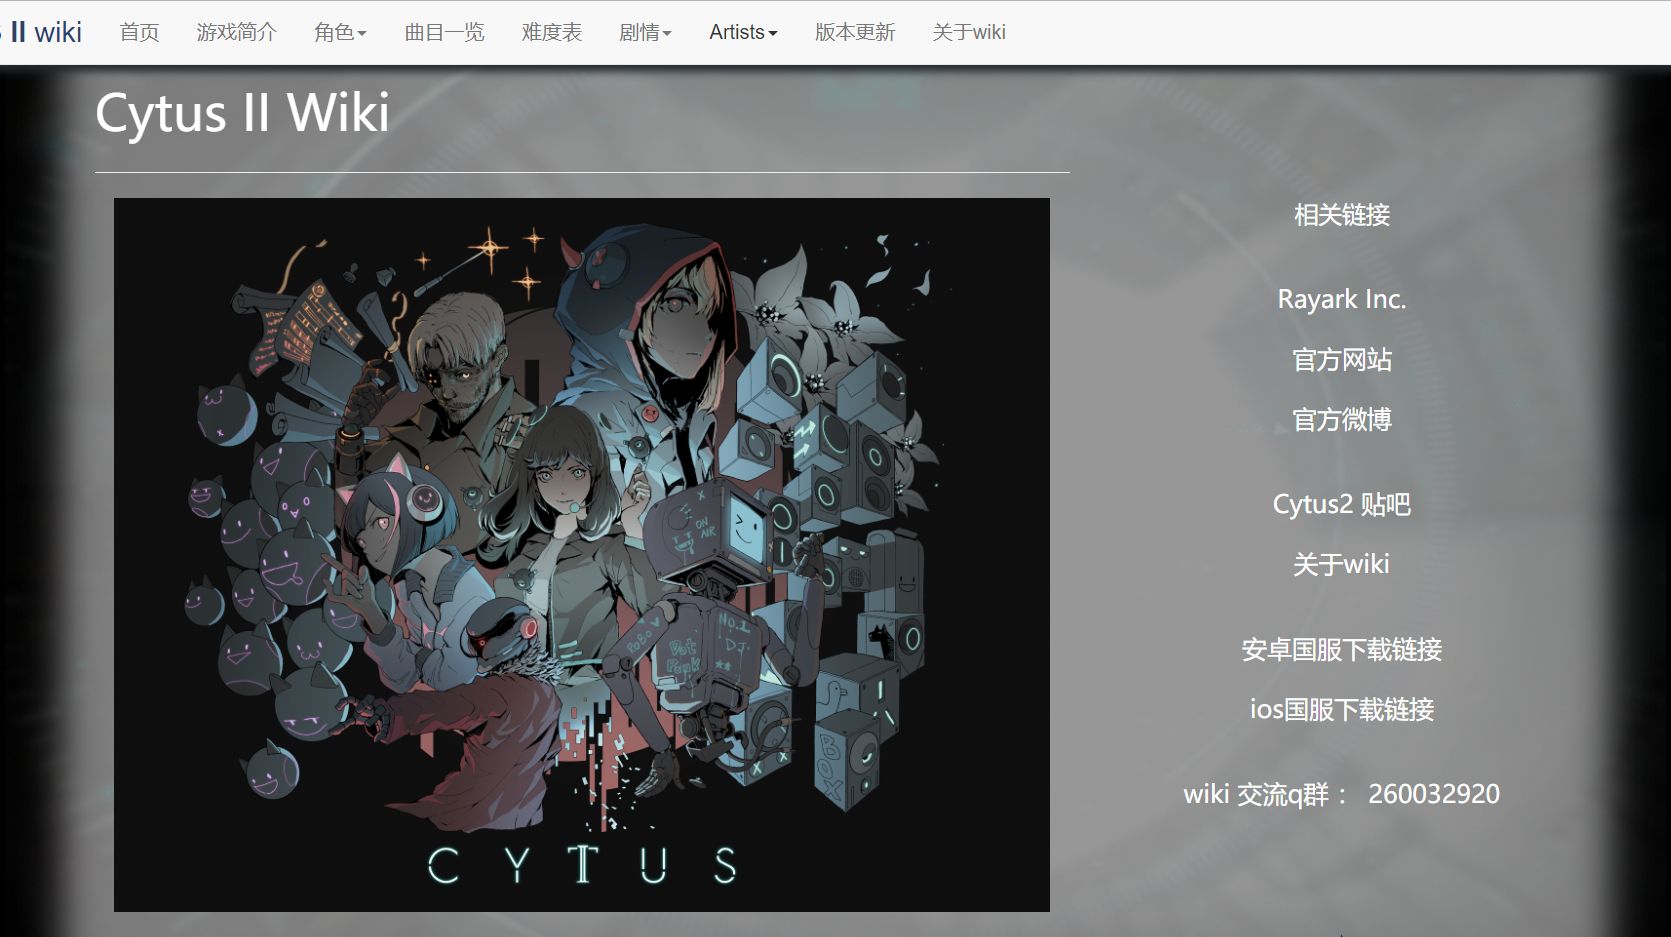 cytus ii wiki